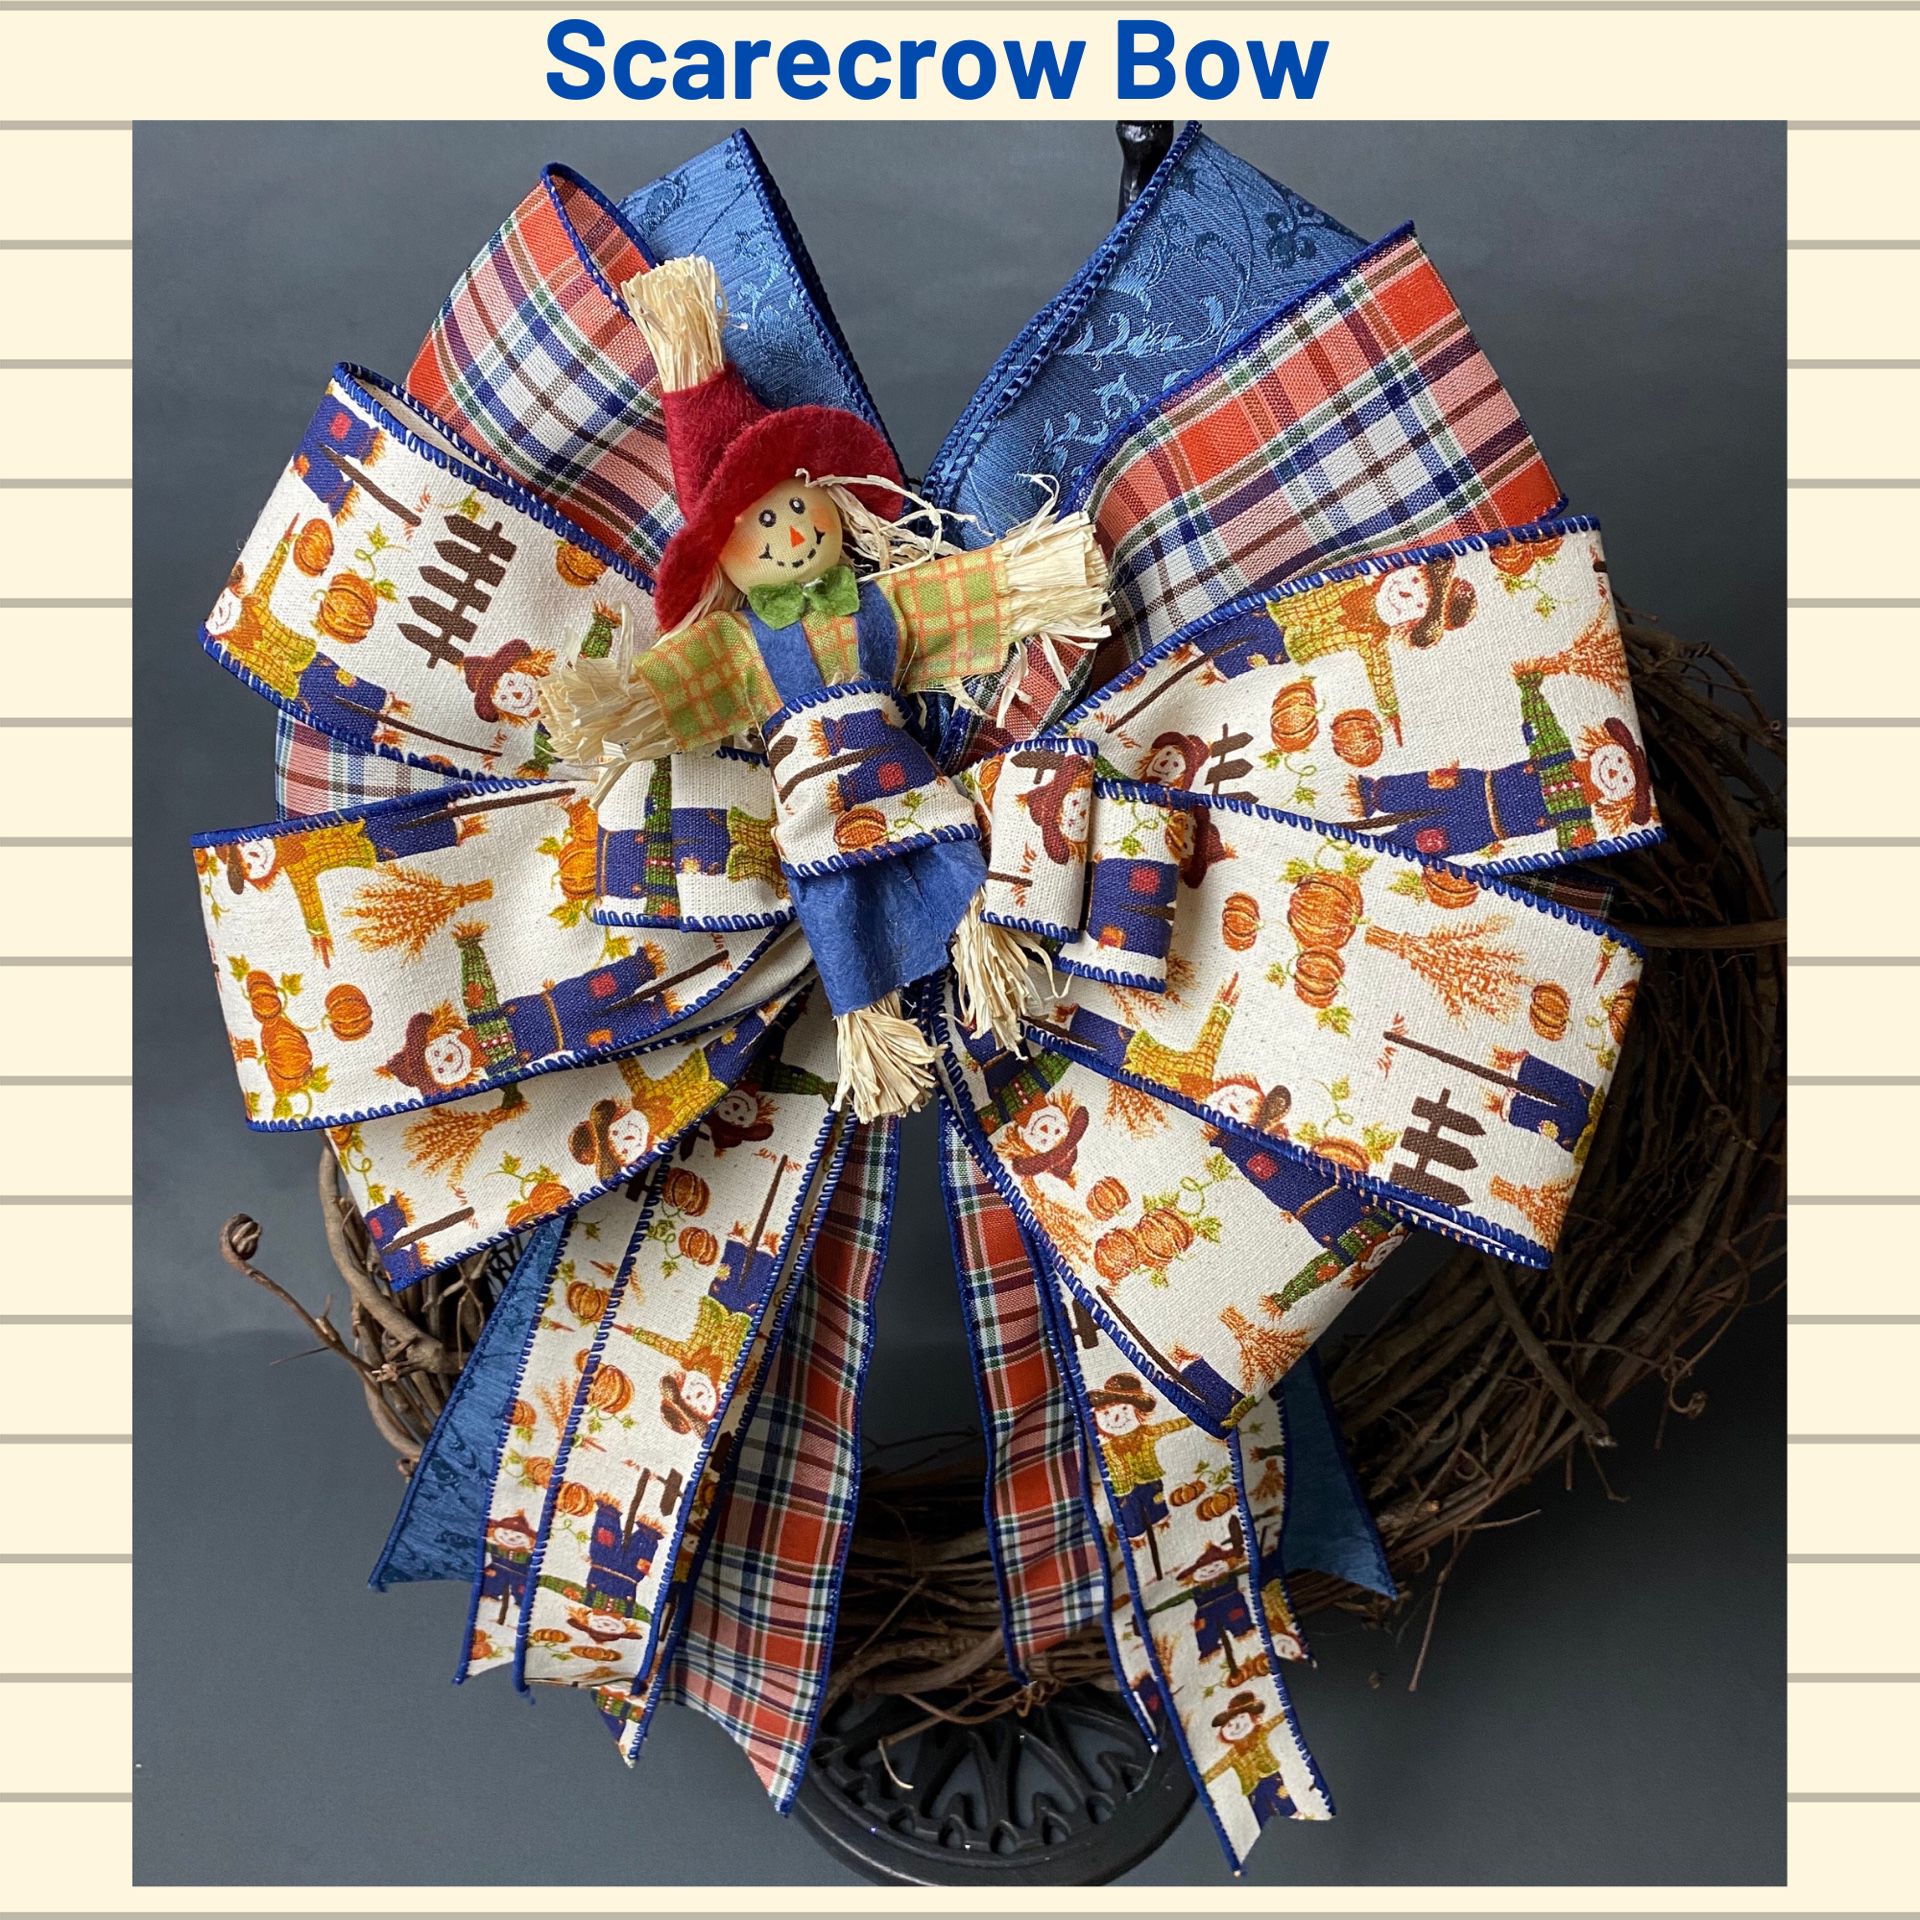 Scarecrow Bow